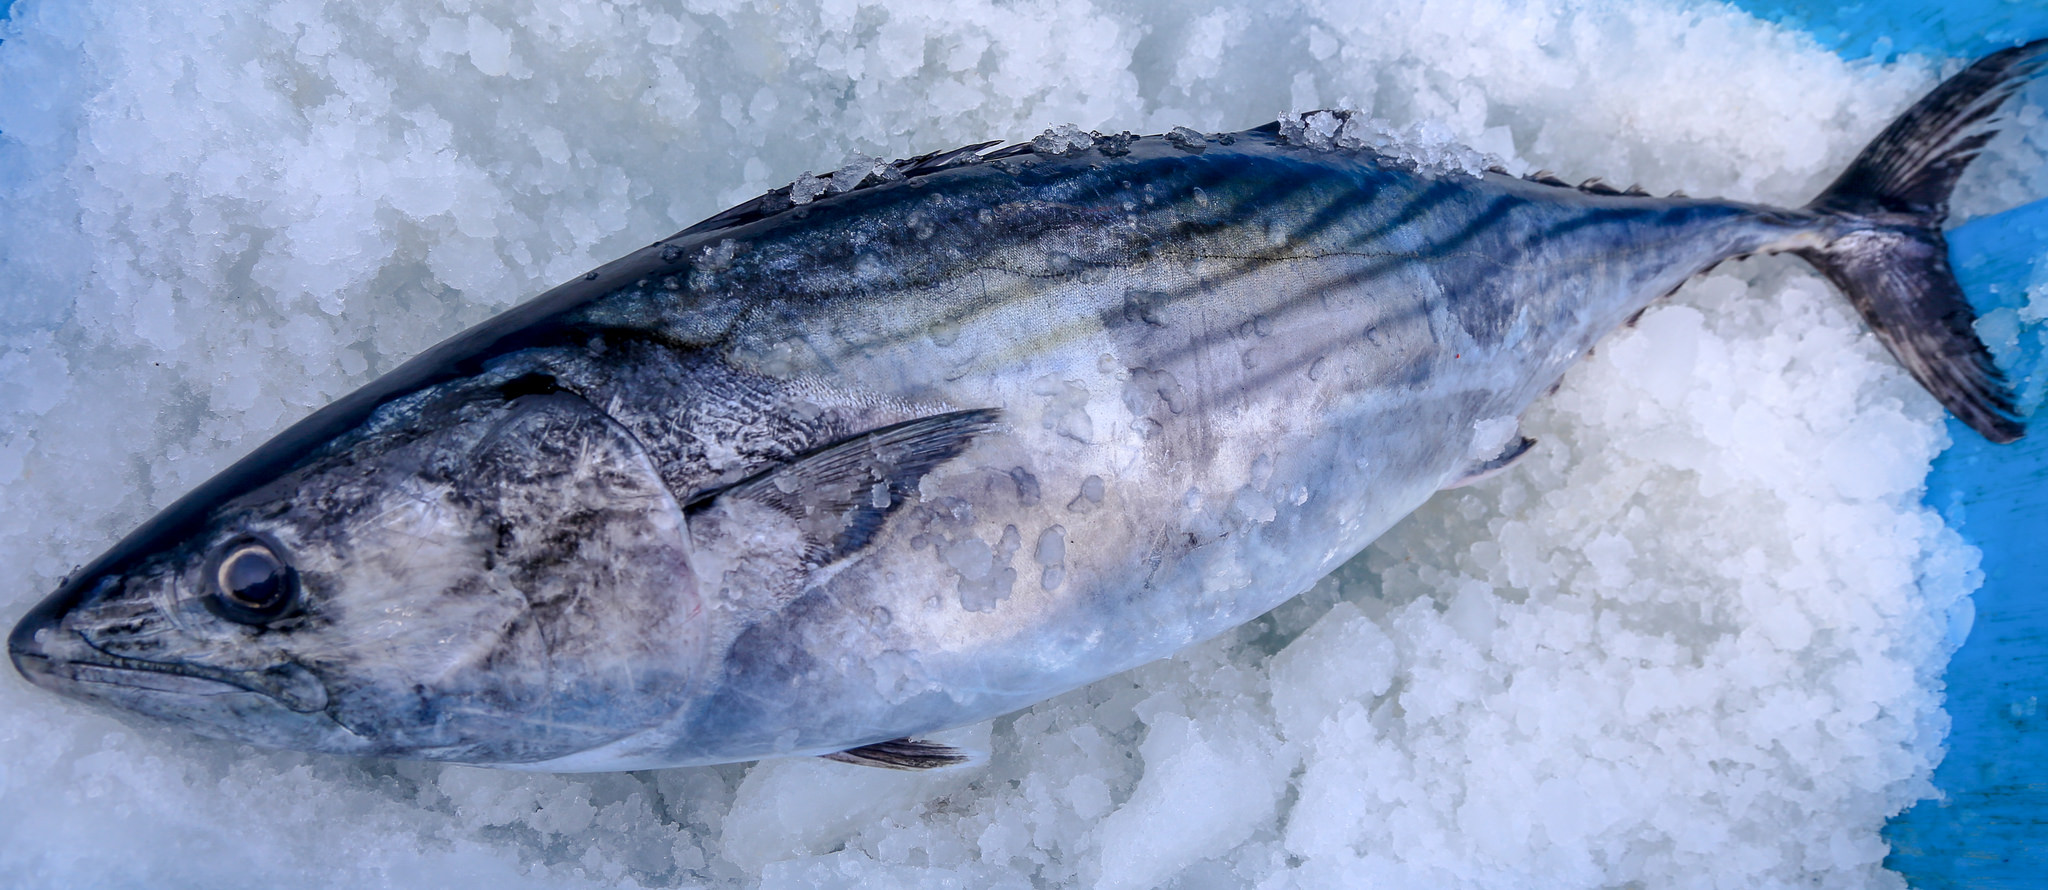 Pescado congelado: Pros y contras que tiene su consumo